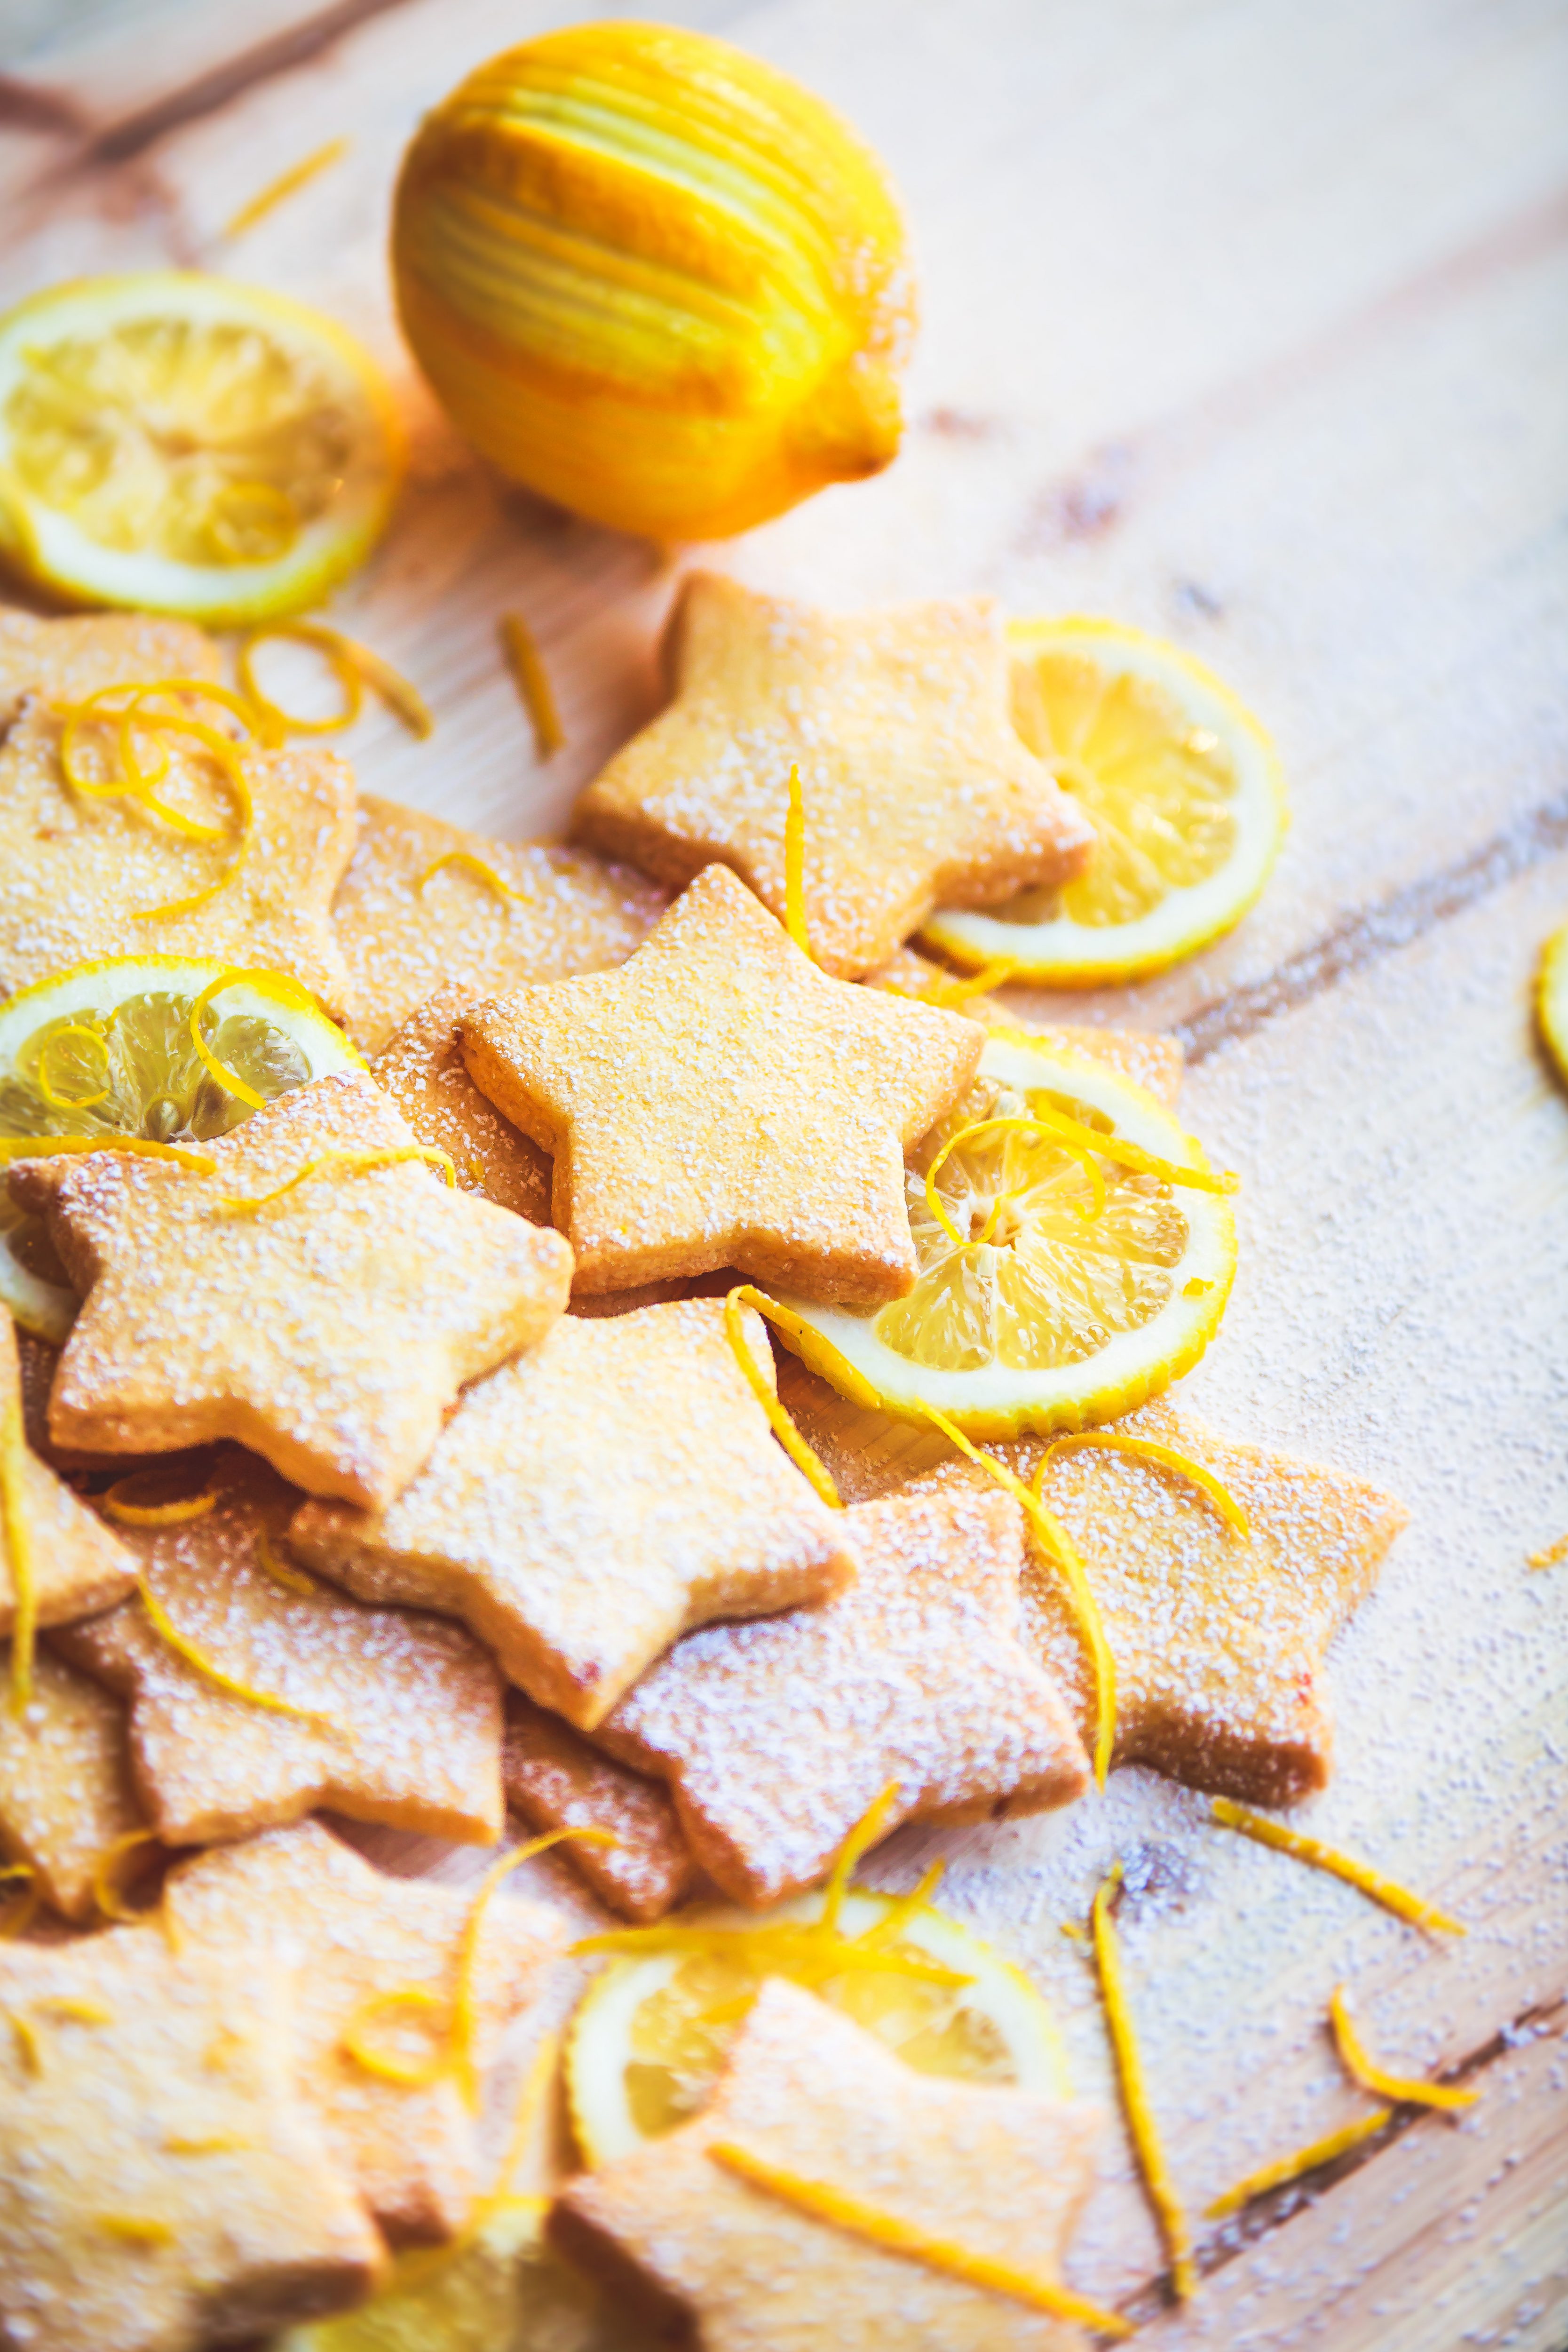 Recette facile Biscuits au citron Photos Culinaire